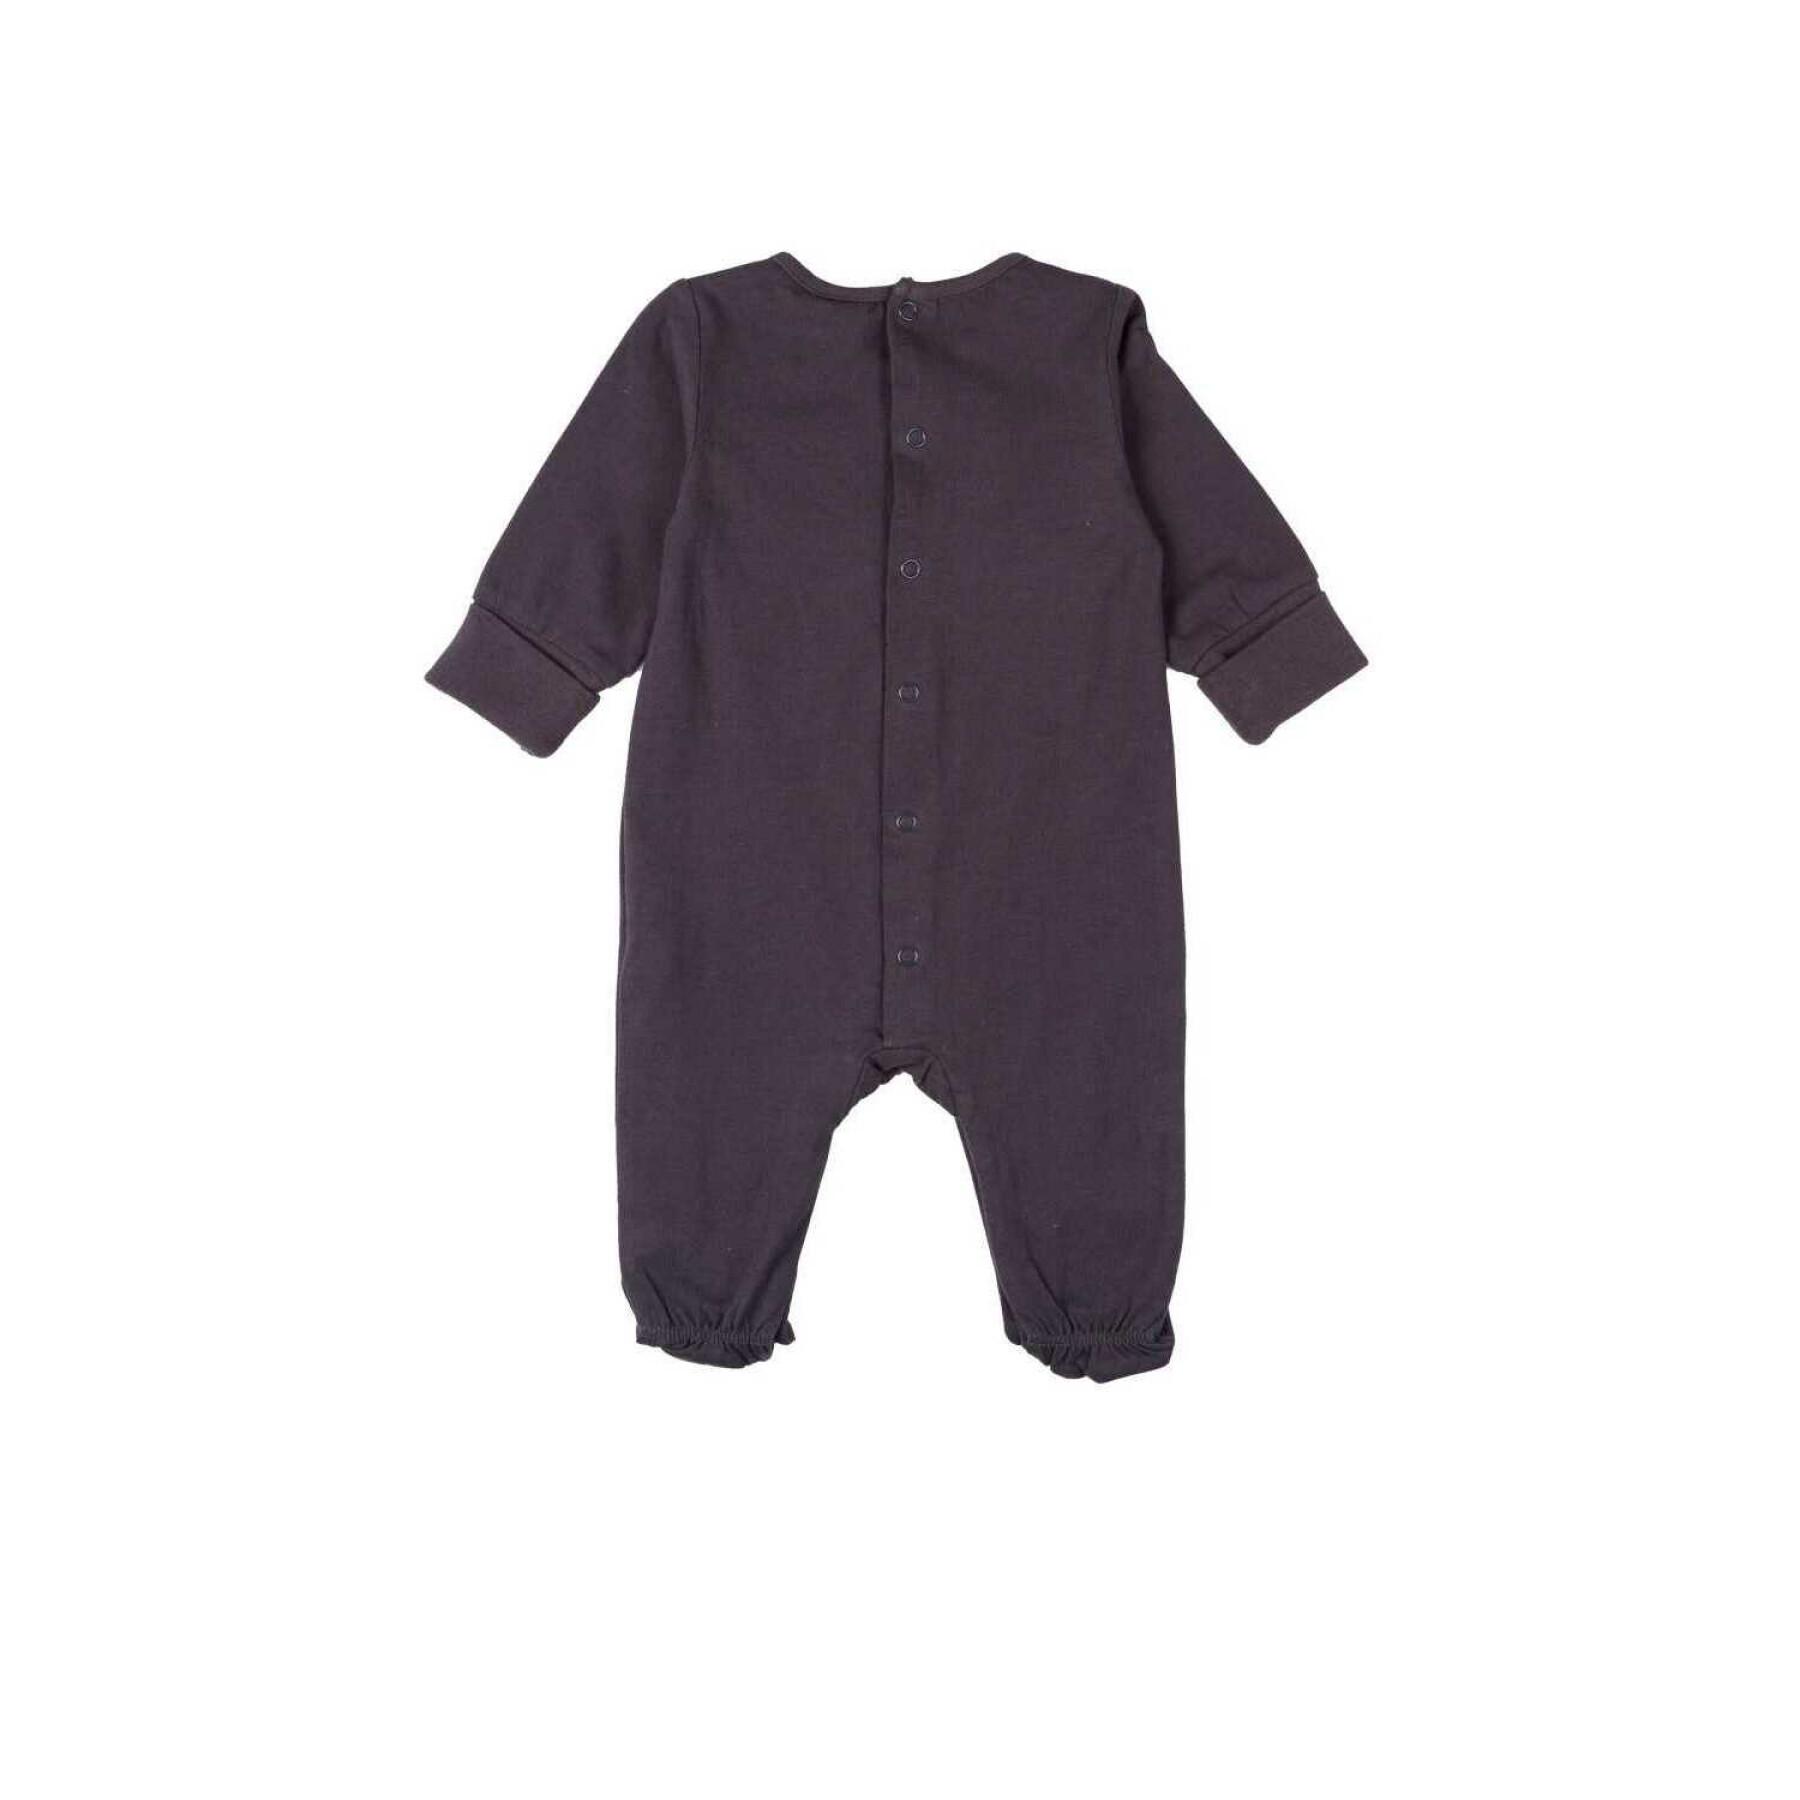 Baby pyjamas Charanga Mecebreo